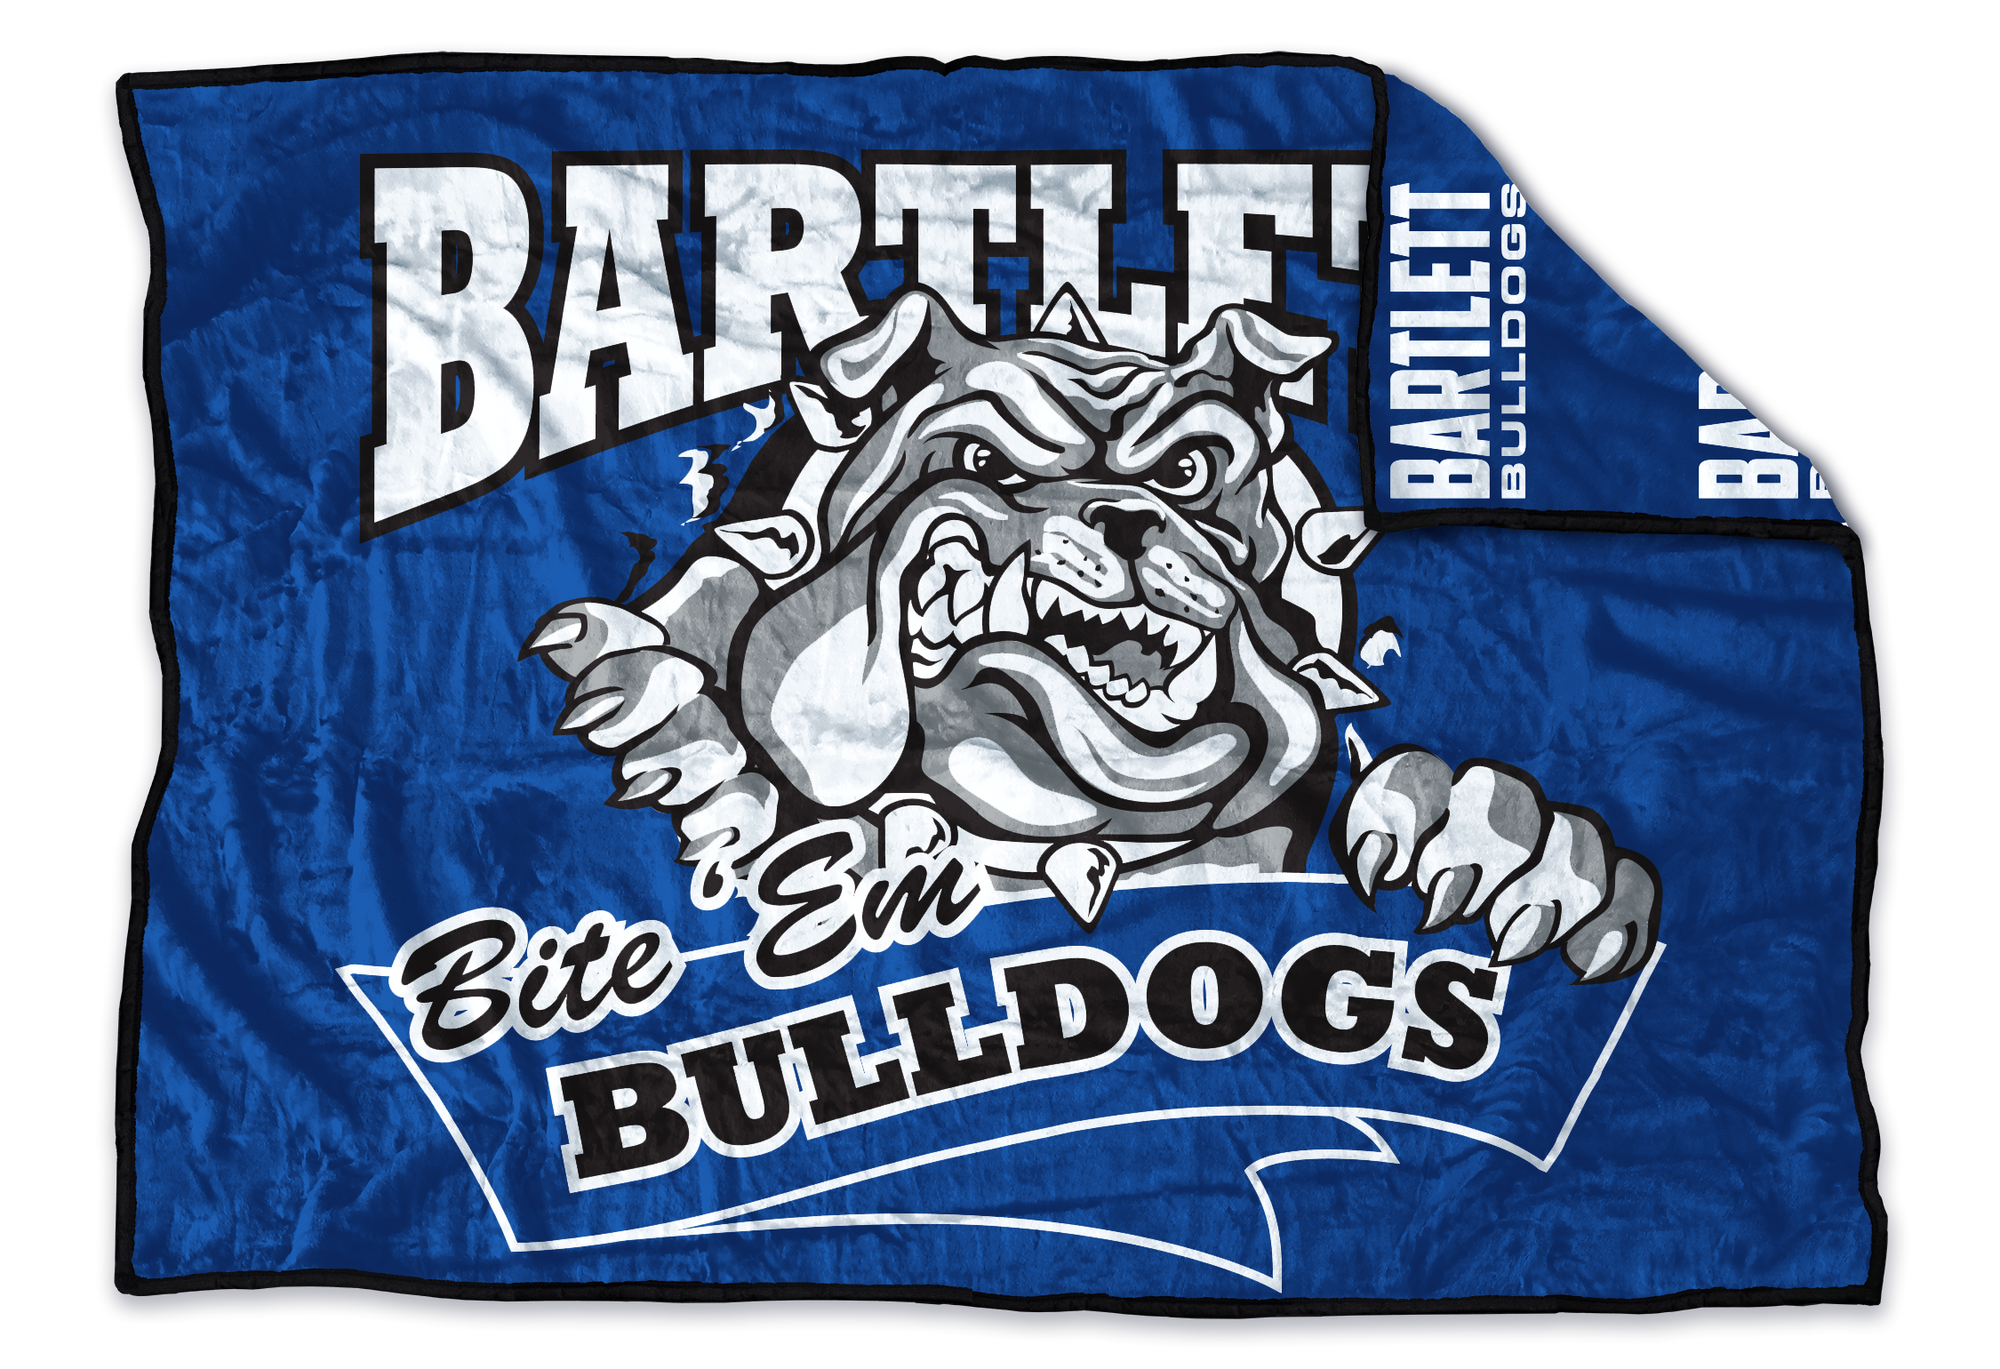 Bartlett Bulldogs